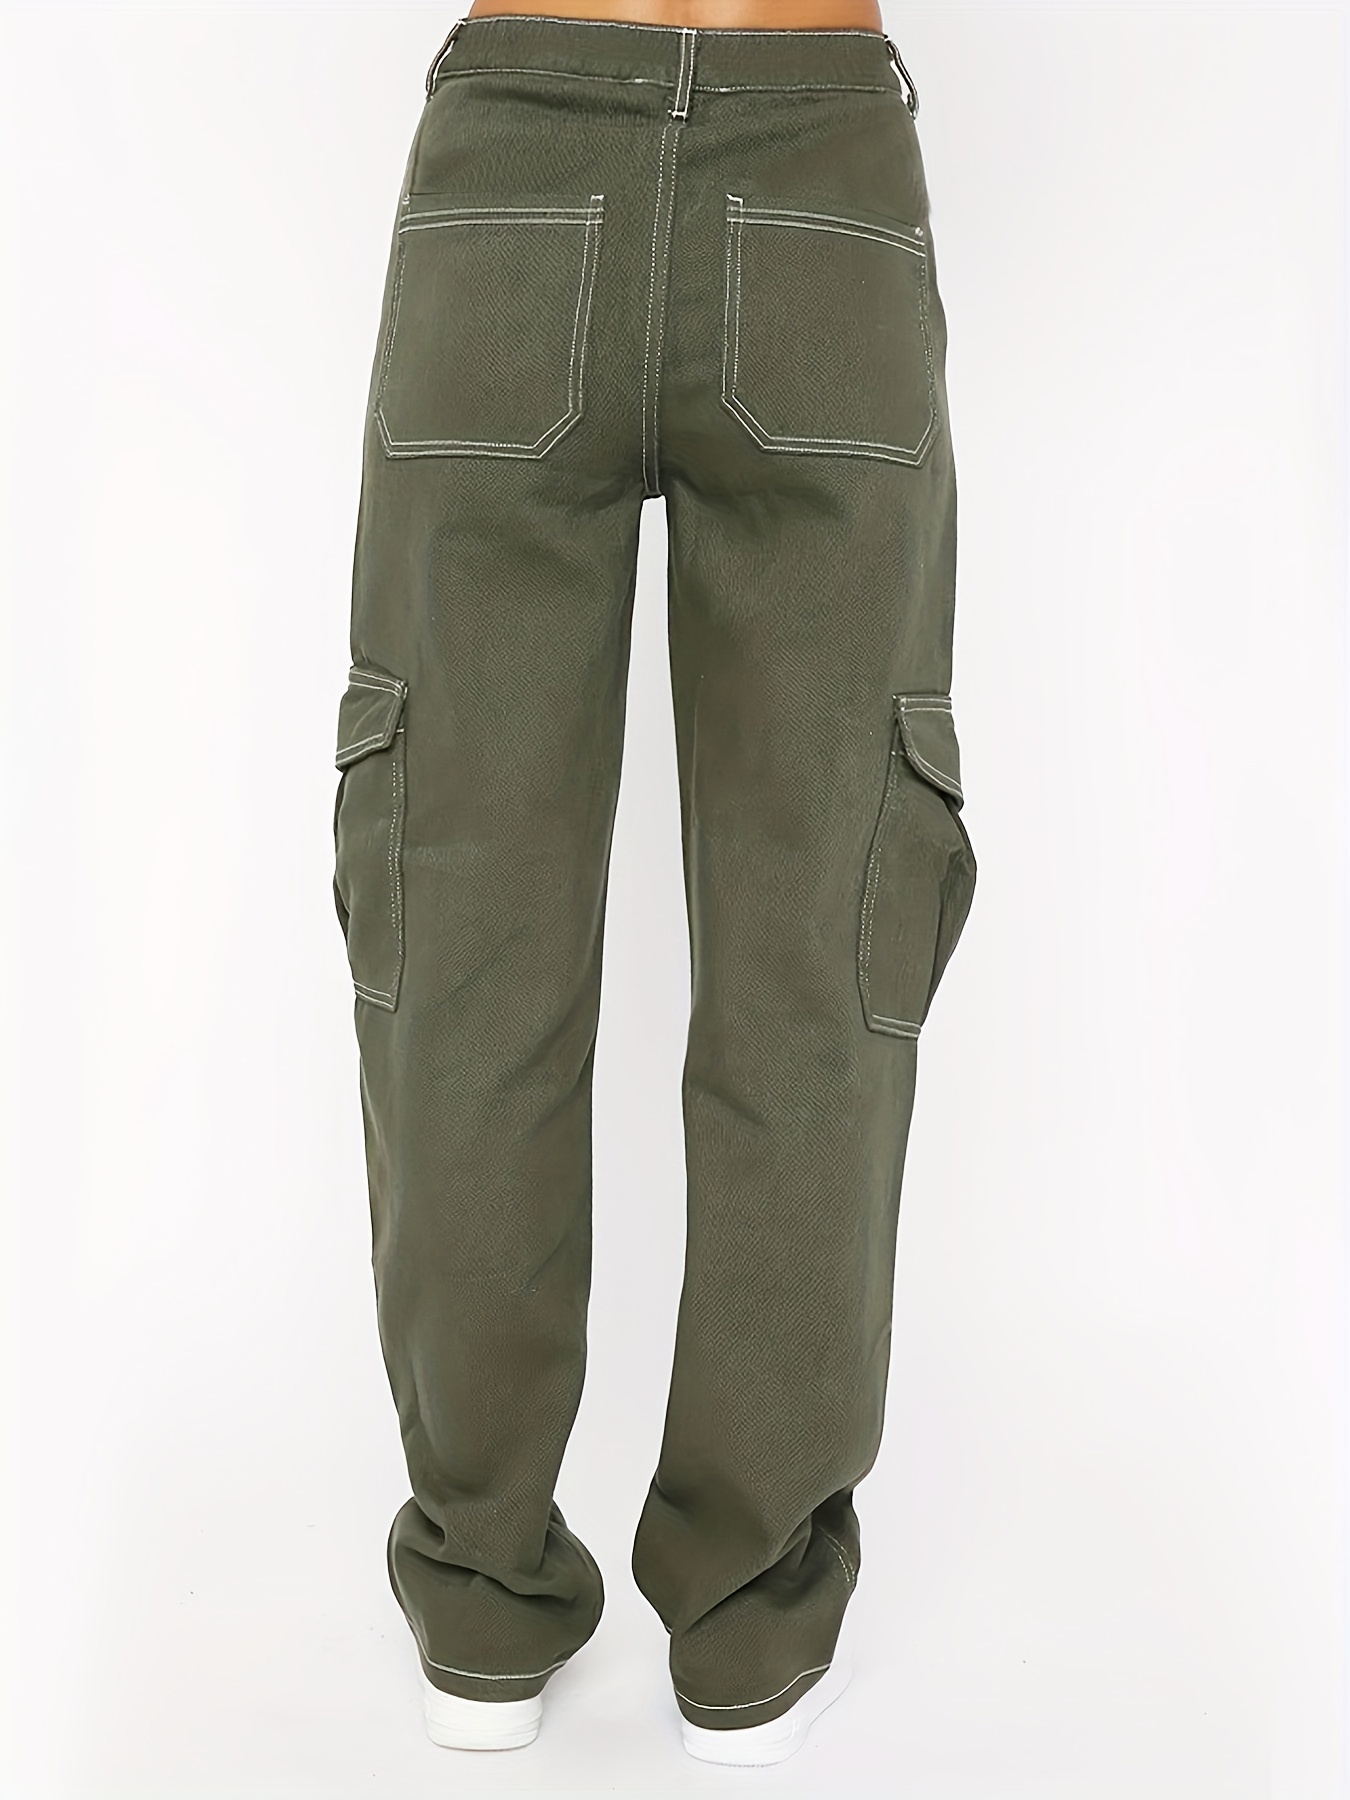 Army Green Loose Jeans Women's Street Wear Vintage Denim Trousers